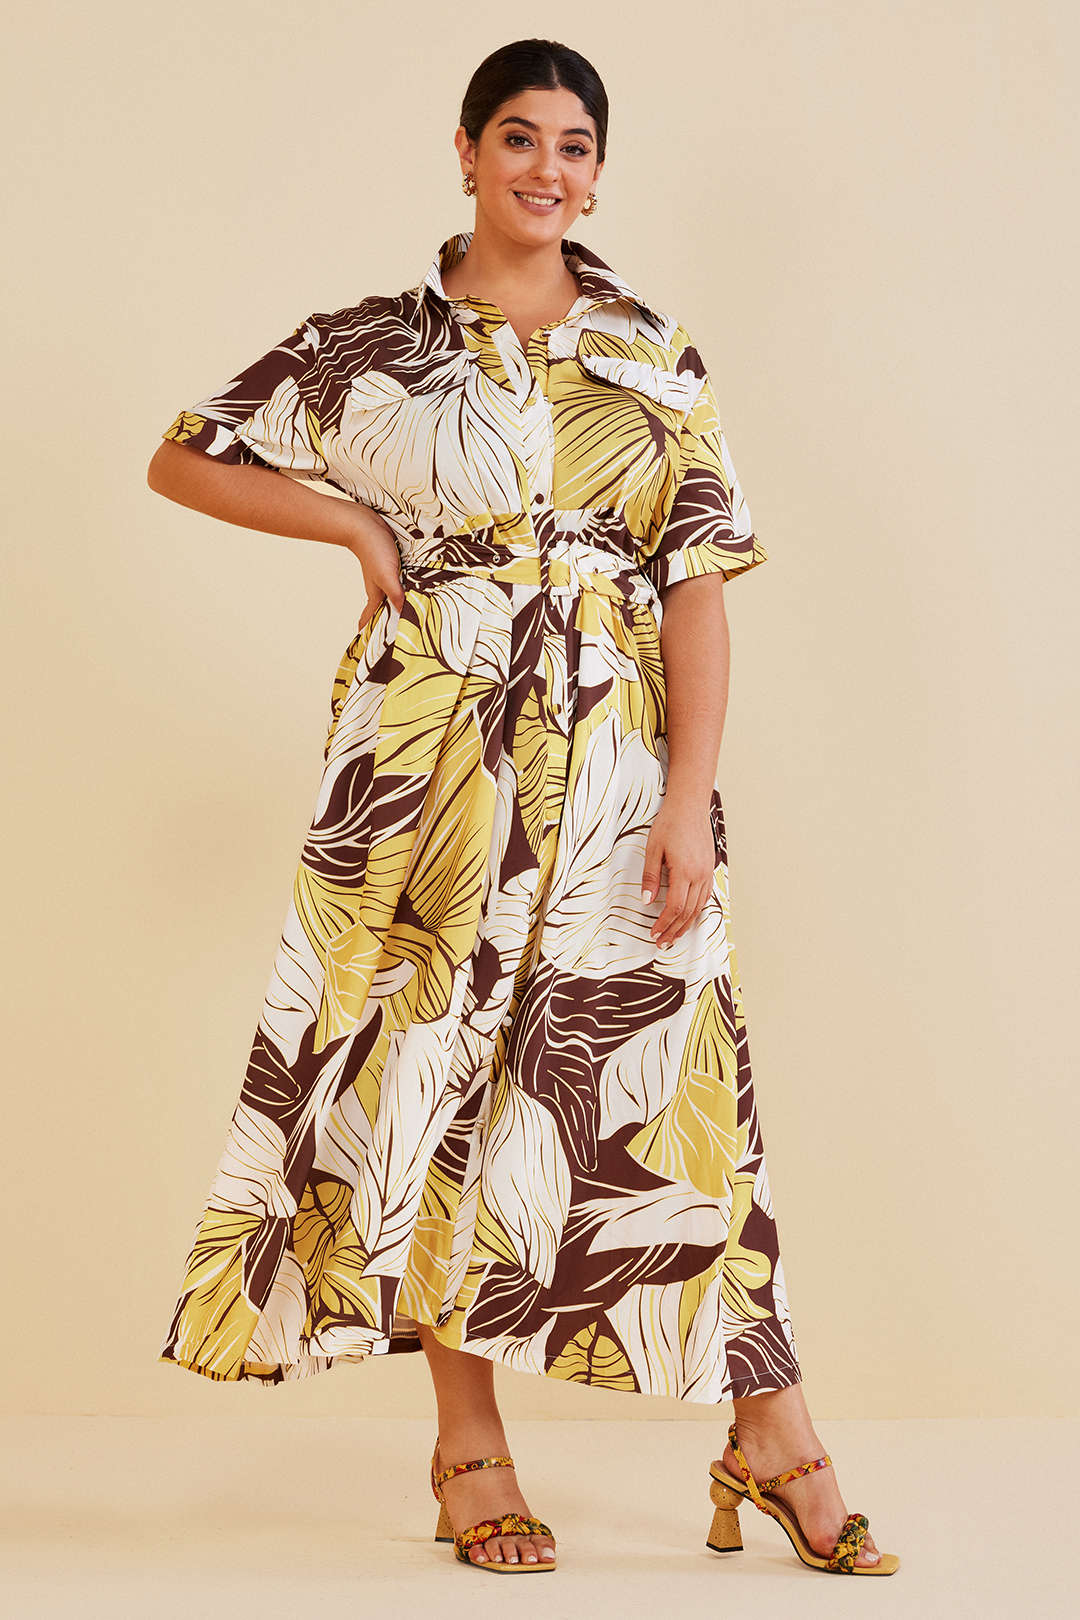 Plus Size Floral Print Maxi Dress